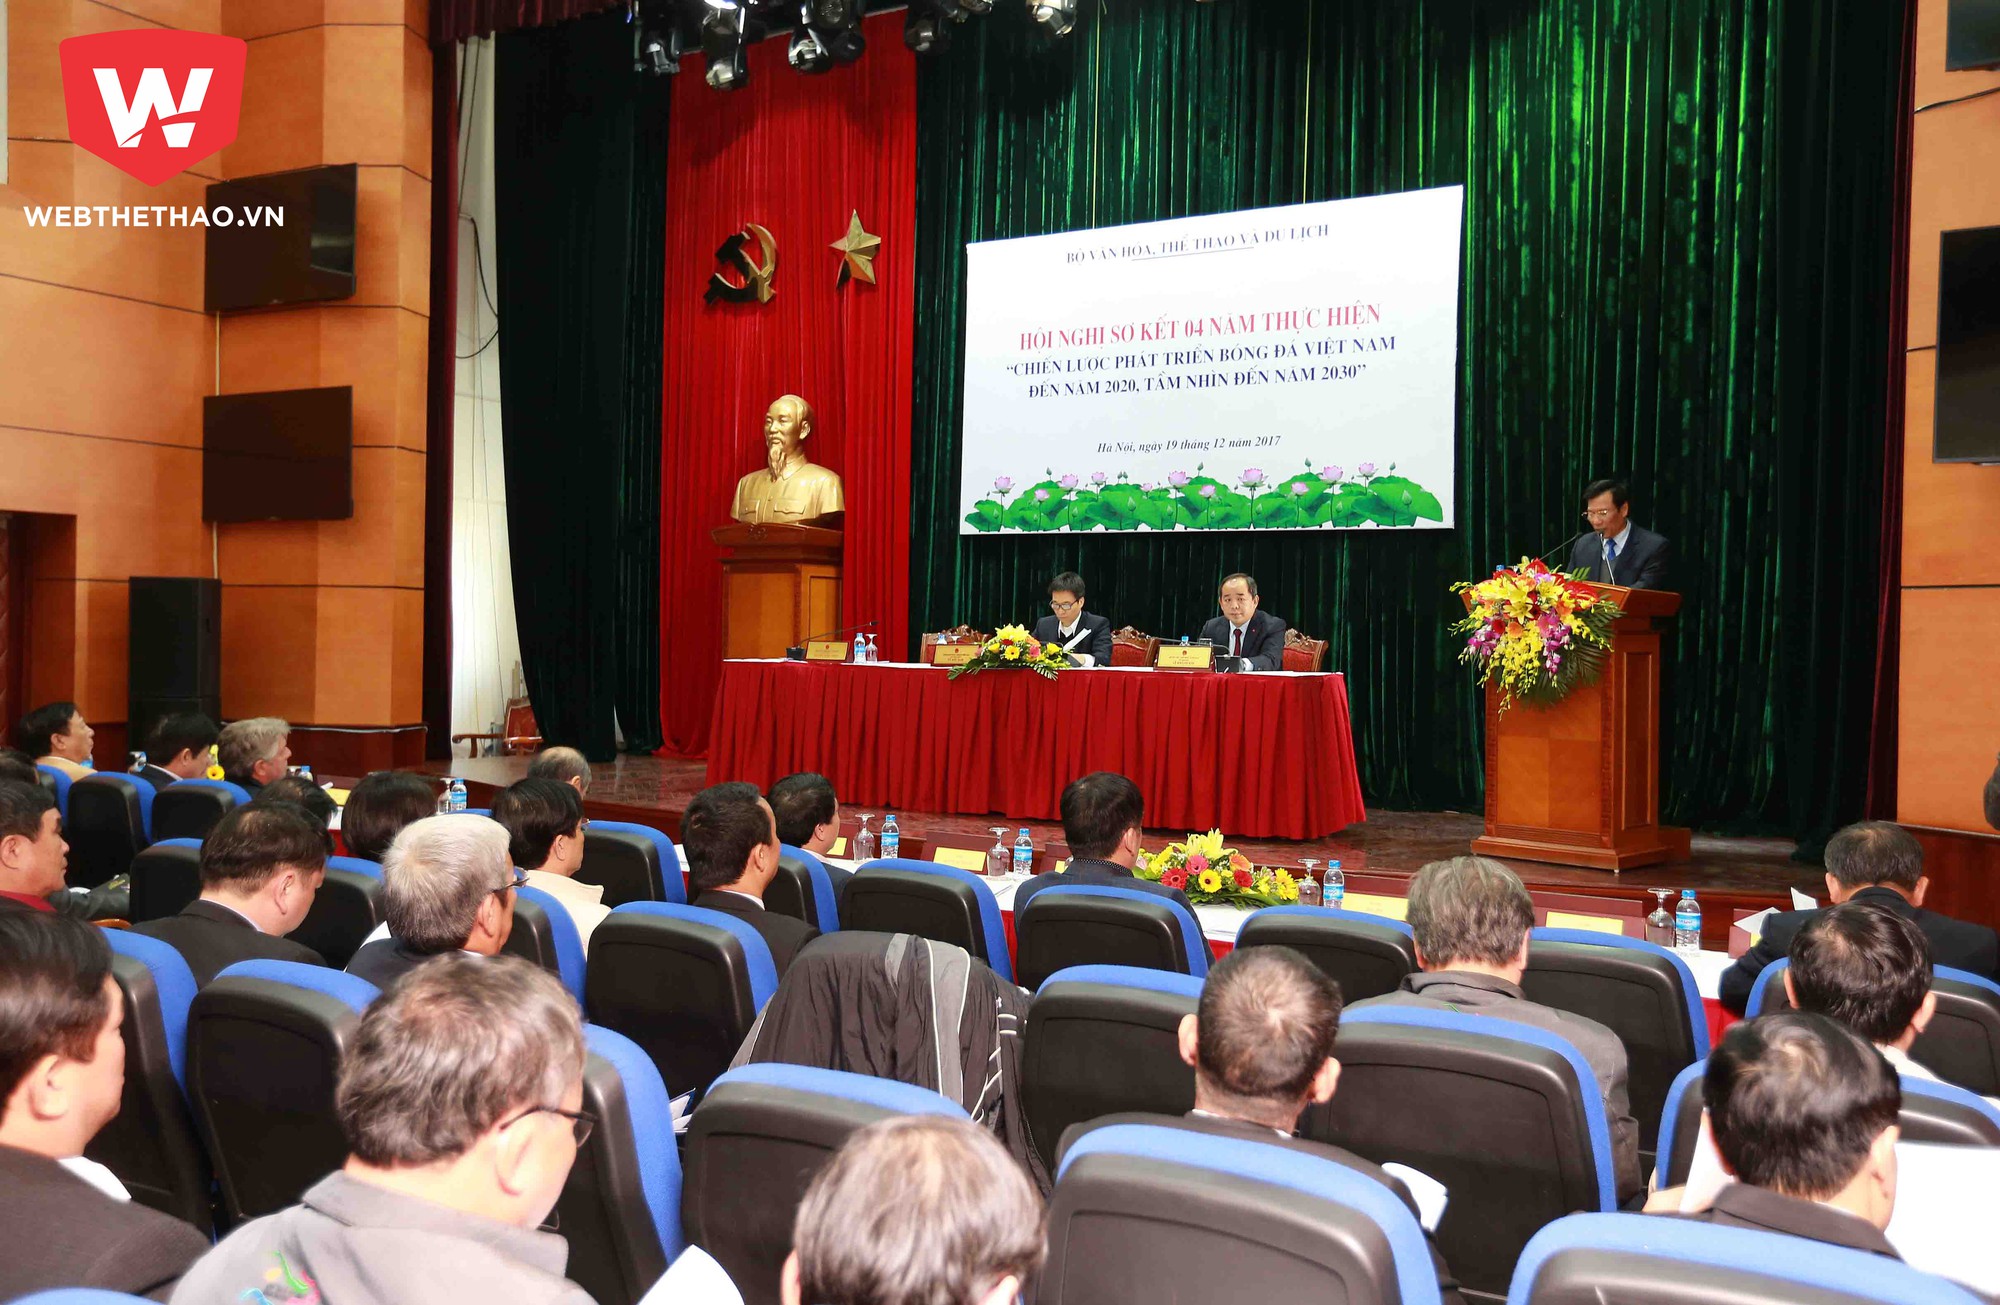 Hội nghị sơ kết 4 năm thực hiện “Chiến lược phát triển bóng đá Việt Nam 2020, tầm nhìn đến năm 2030. Hình ảnh: Hải Đăng